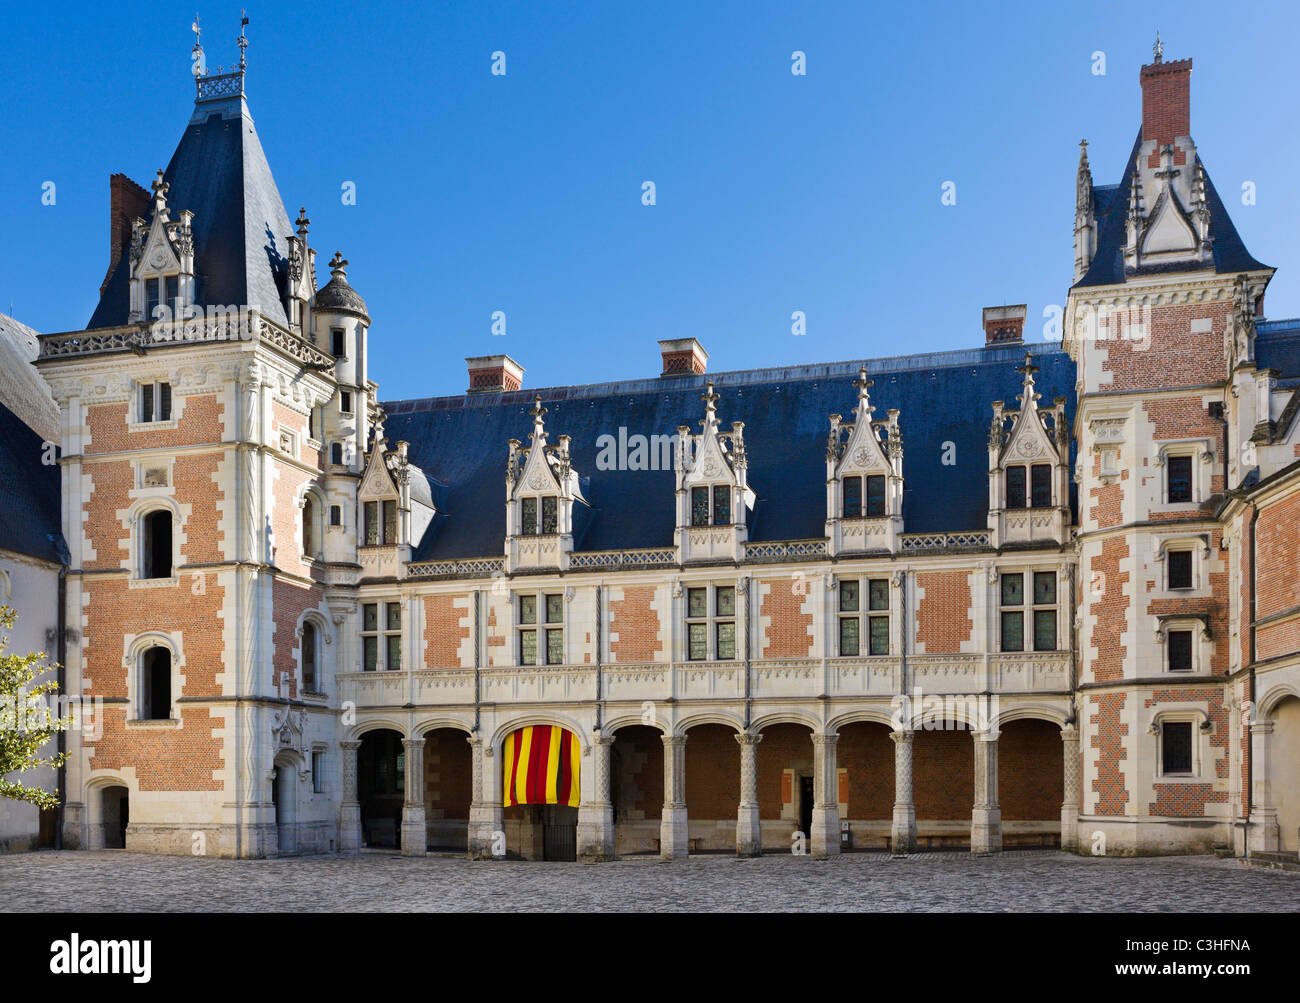 L'aile Louis XII de la cour intérieure, le château de Blois, Loire, Touraine, France Banque D'Images